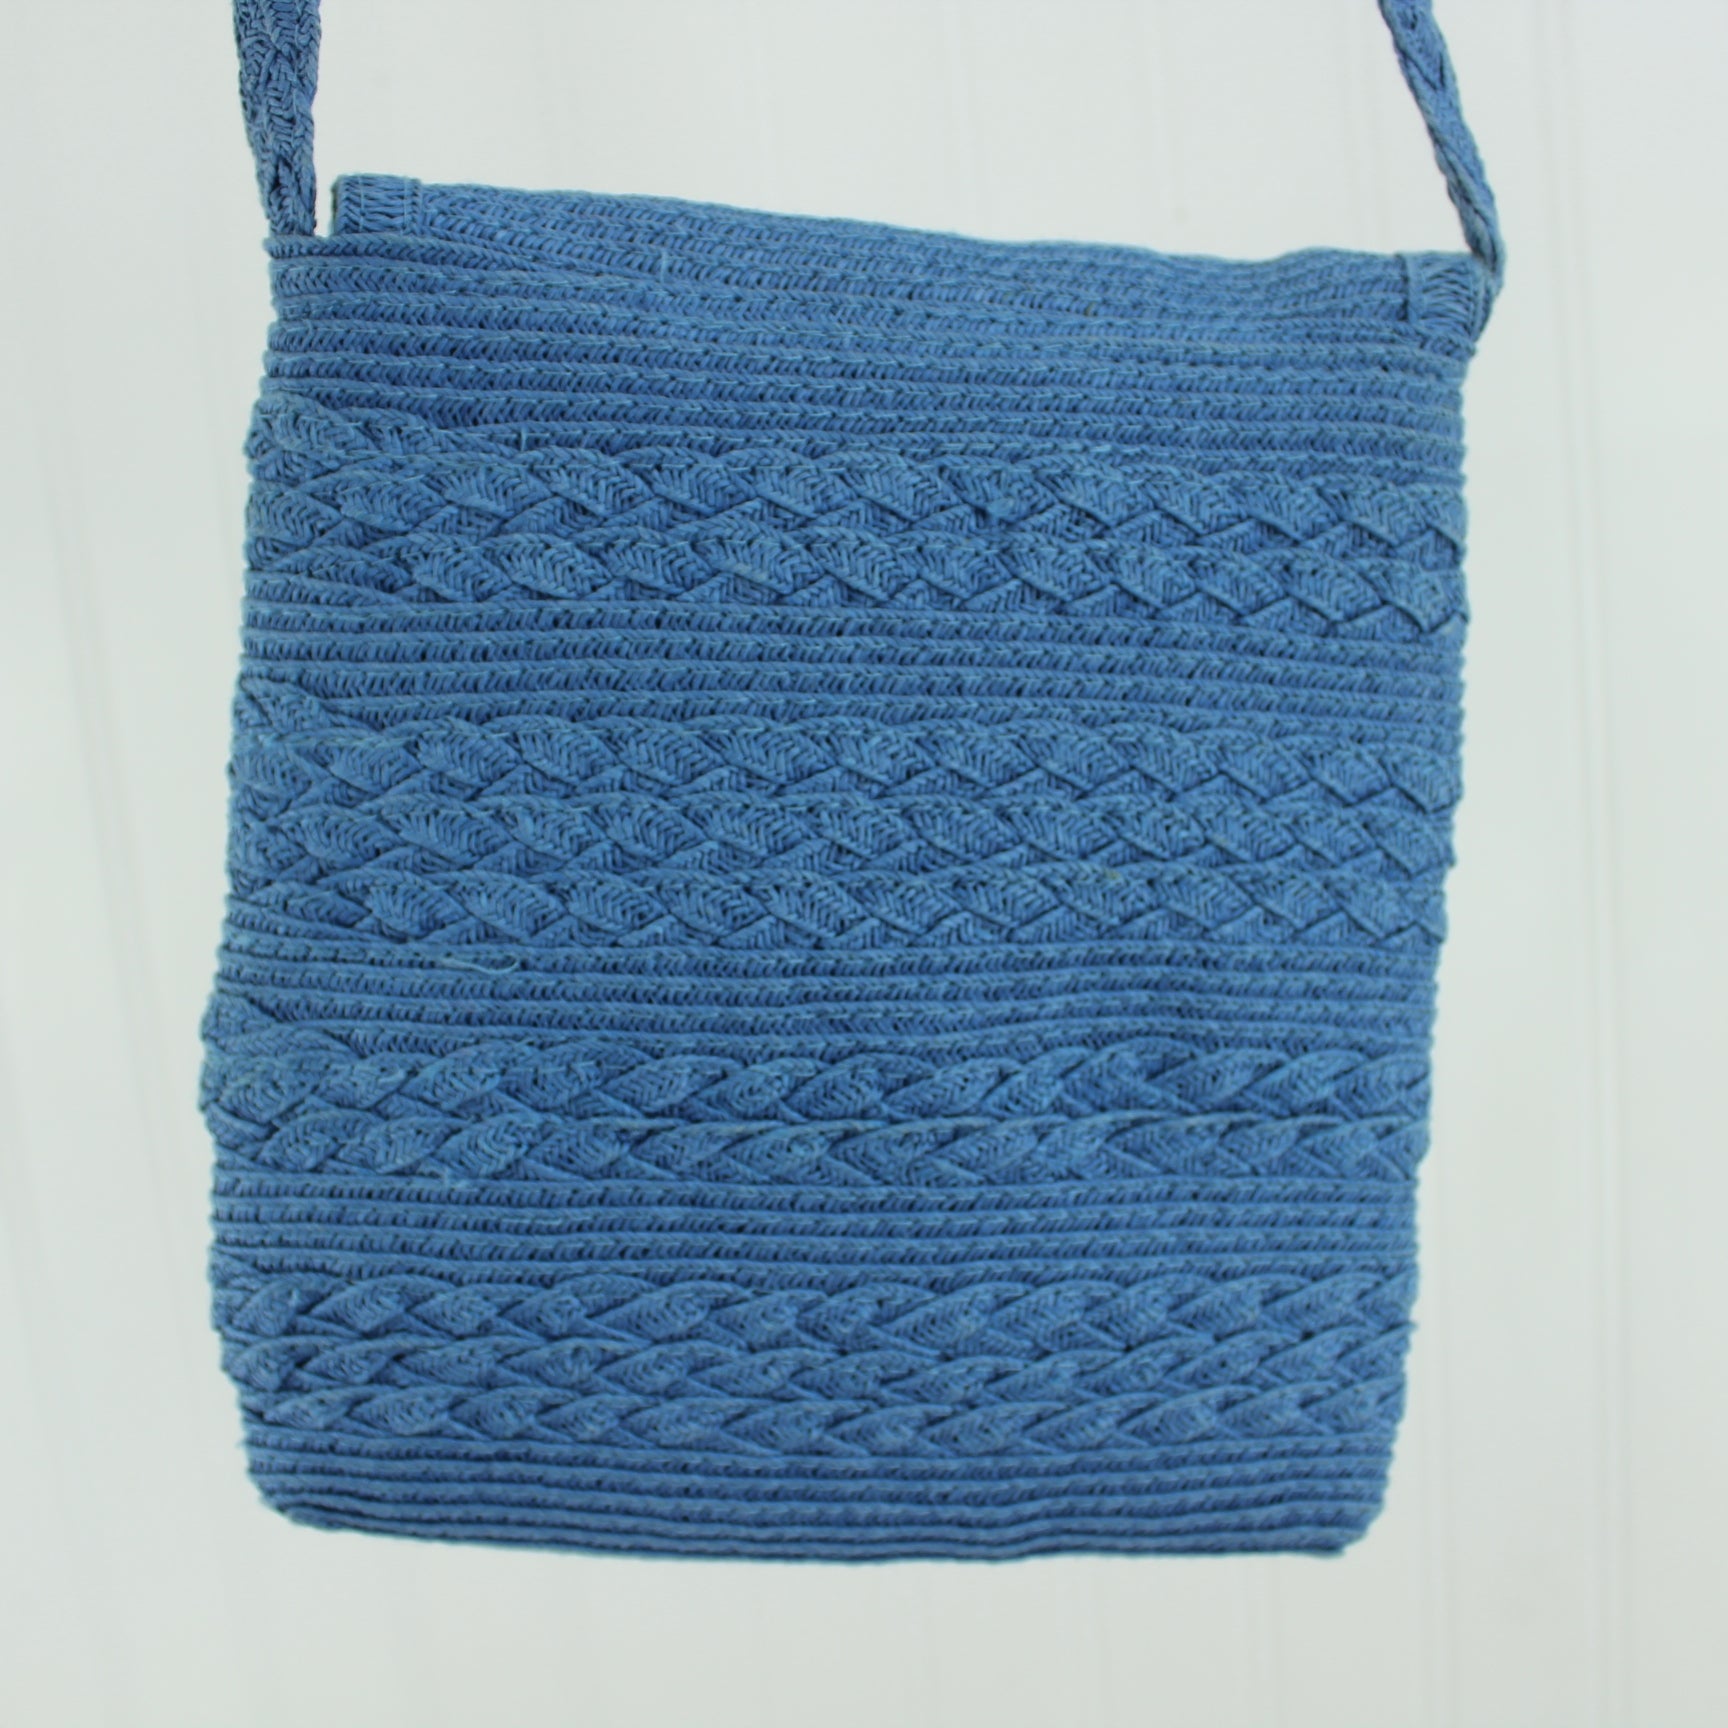 Capelli Small Shoulder Handbag Blue Woven Paper Handbag Unique reverse of purse photo